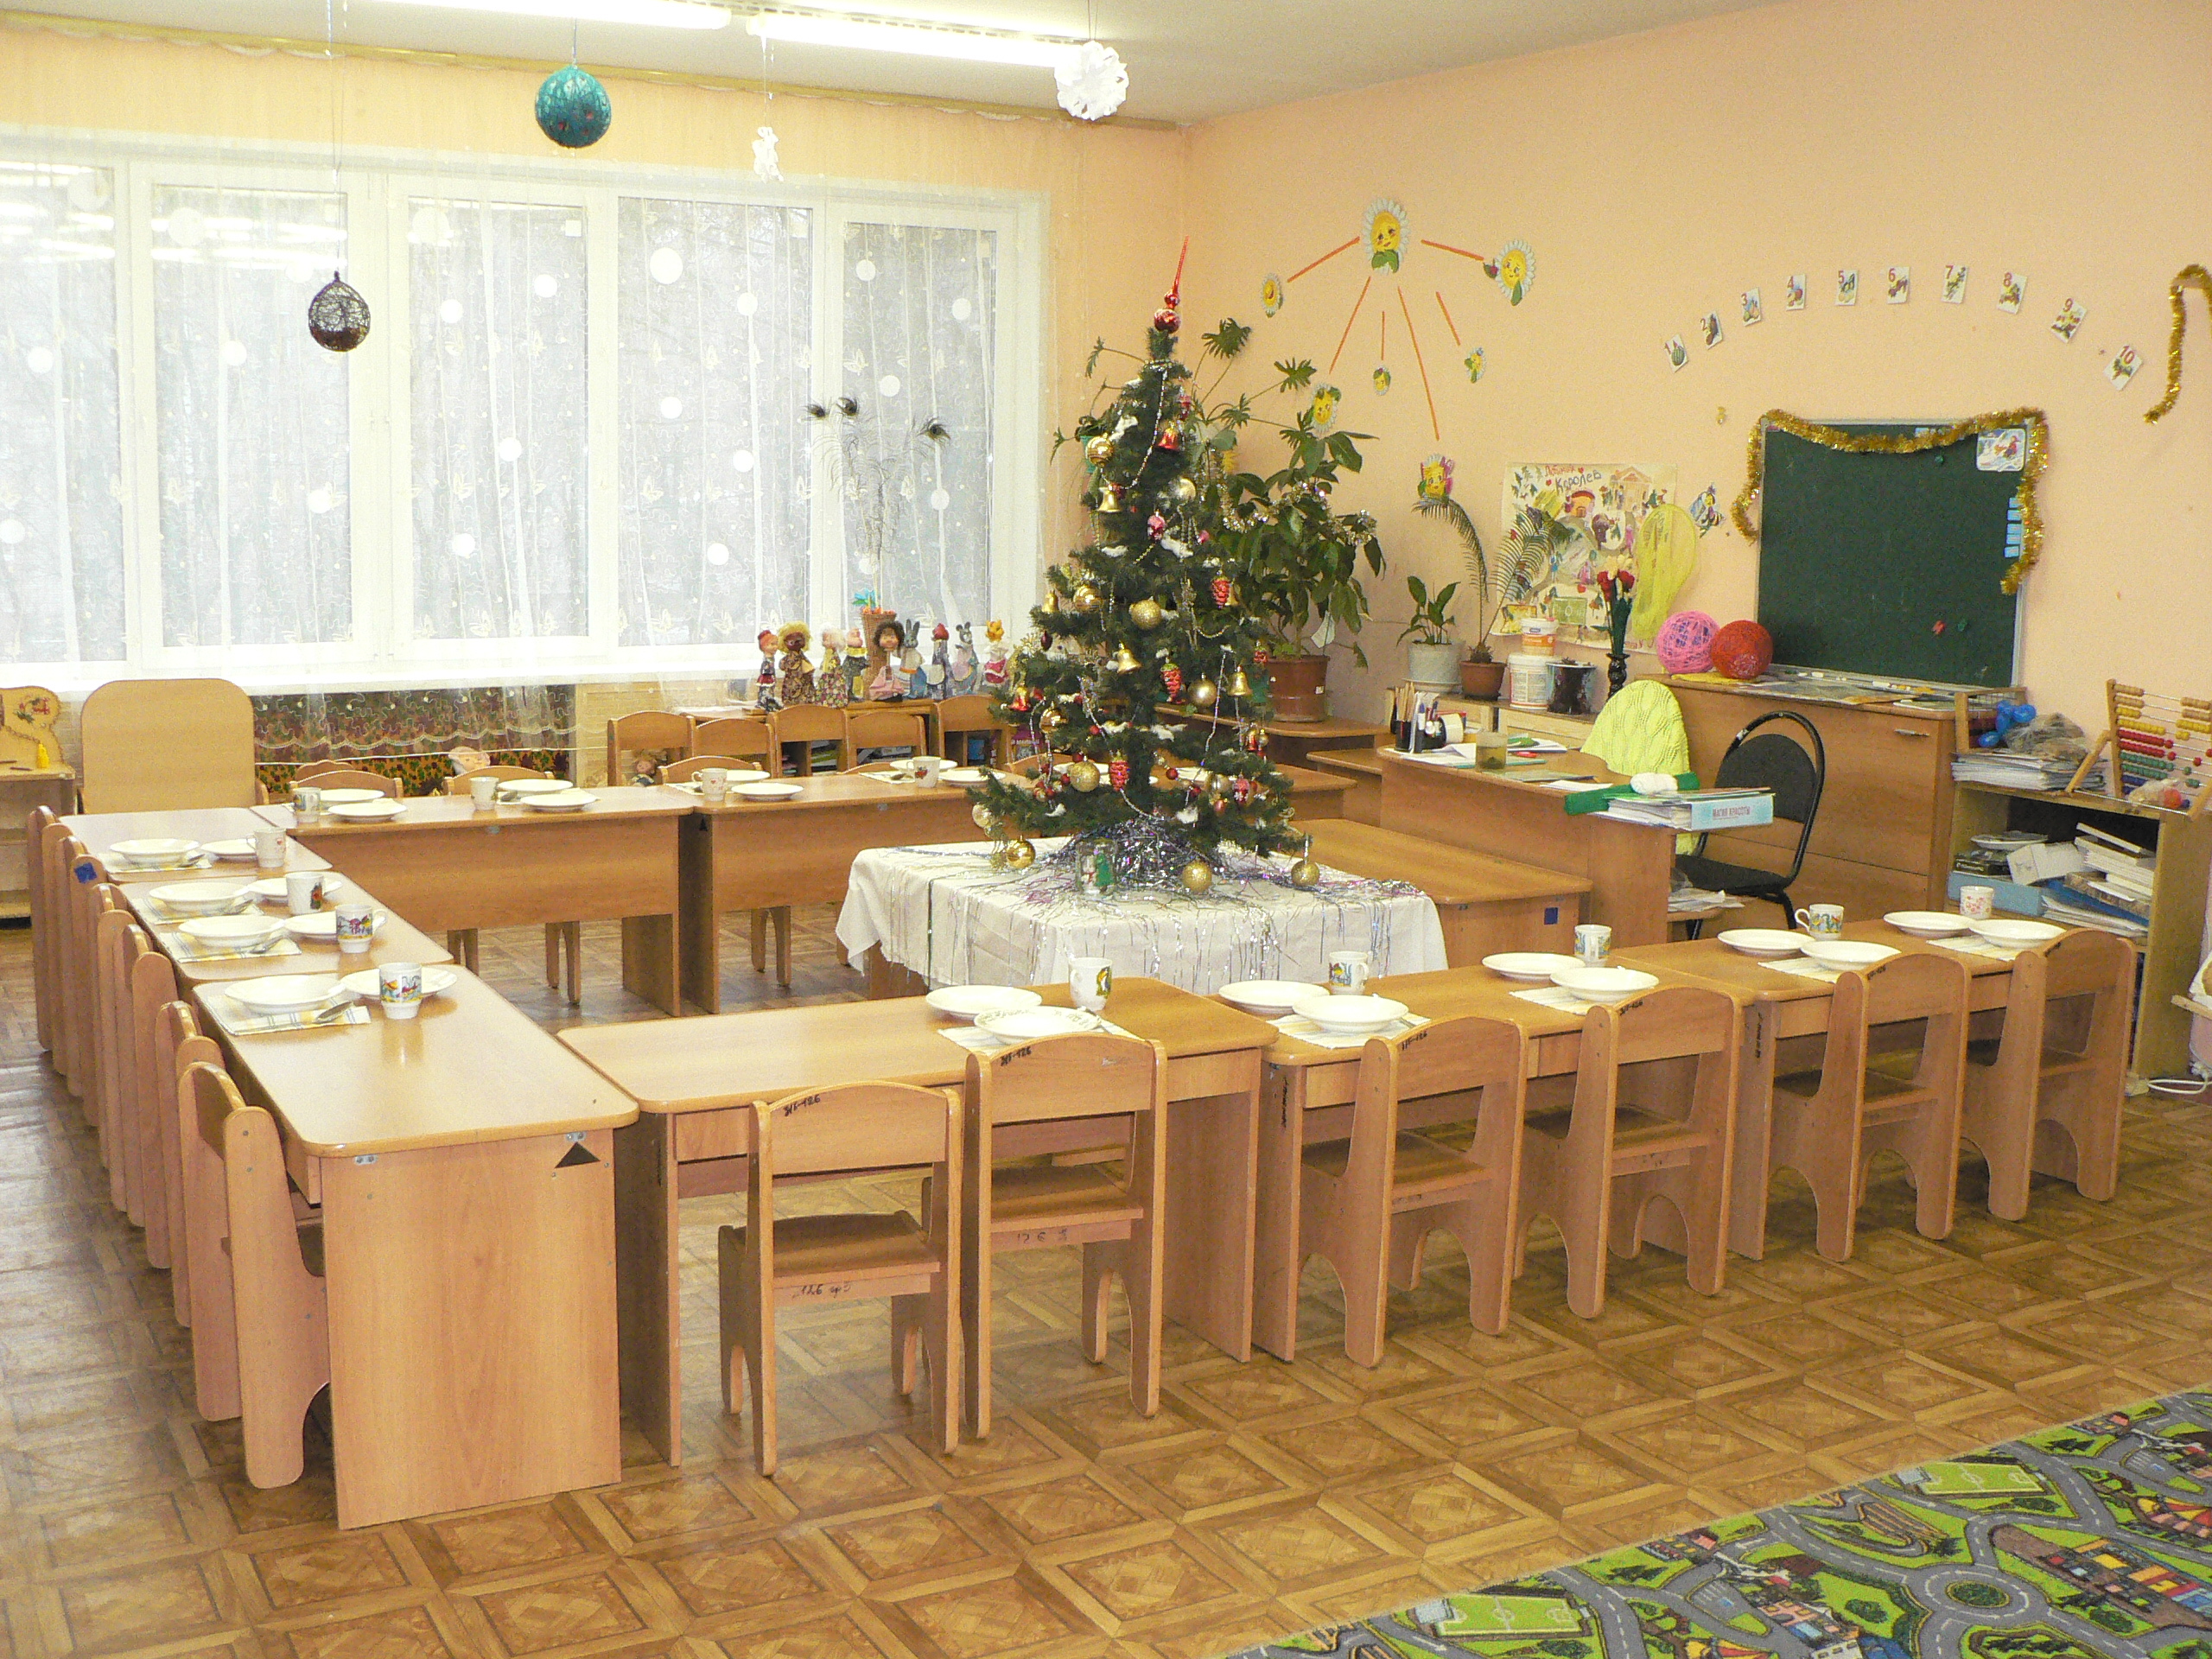 Группа мебели в детском саду по росту